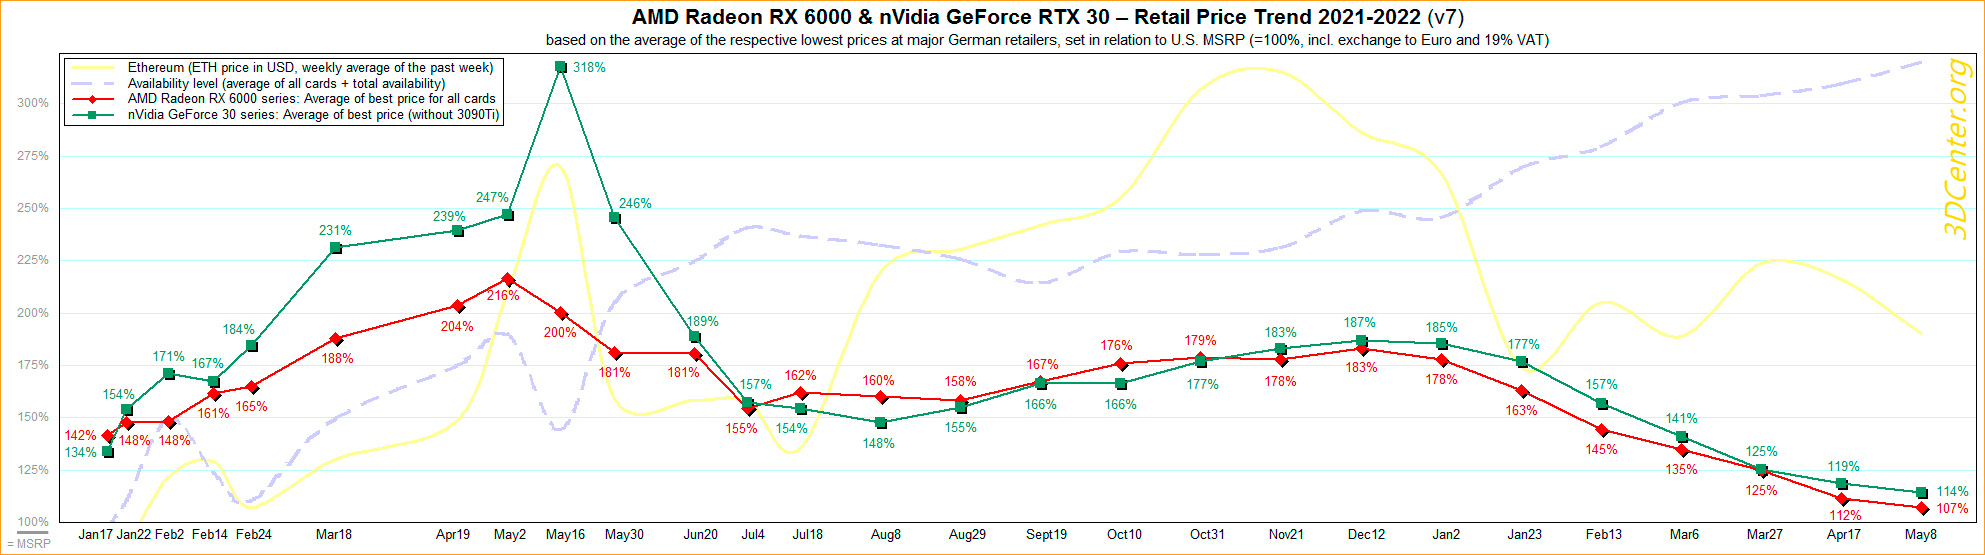 Потихоньку цены видеокарт RTX 3000 и RX 6000 приближаются к рекомендованных значениям